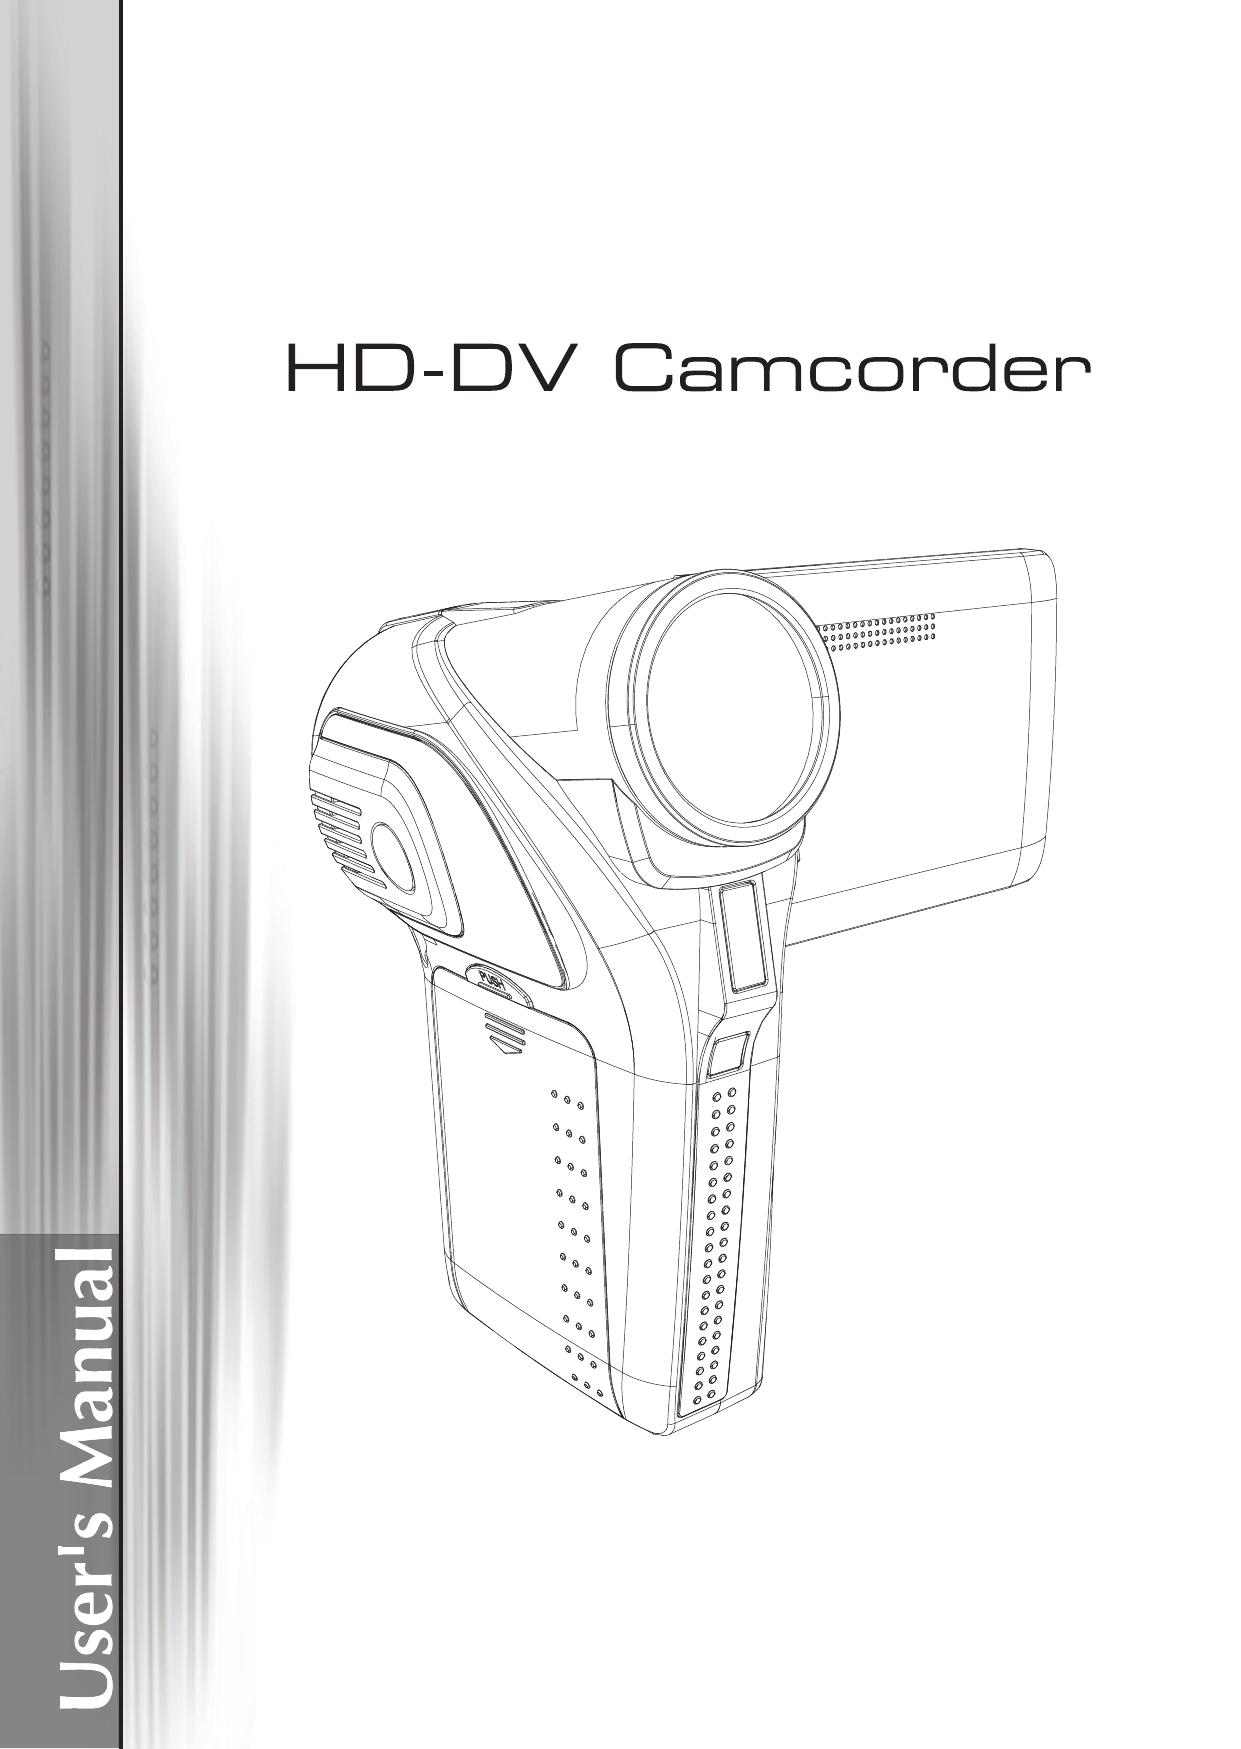 AIPTEK V5Z5S Camcorder User Manual